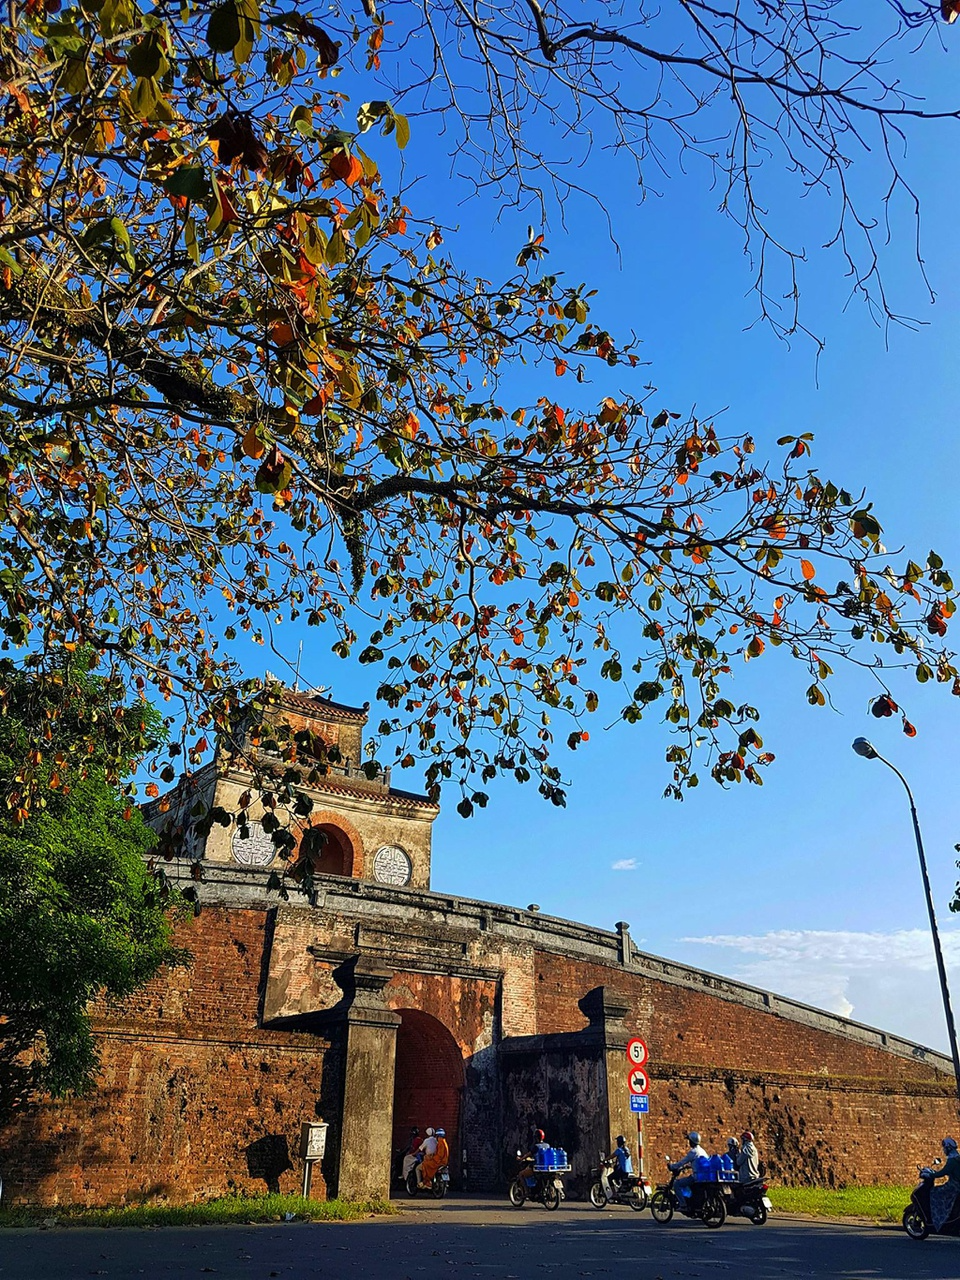 Hue's ancient citadel preserves royal history and natural beauty